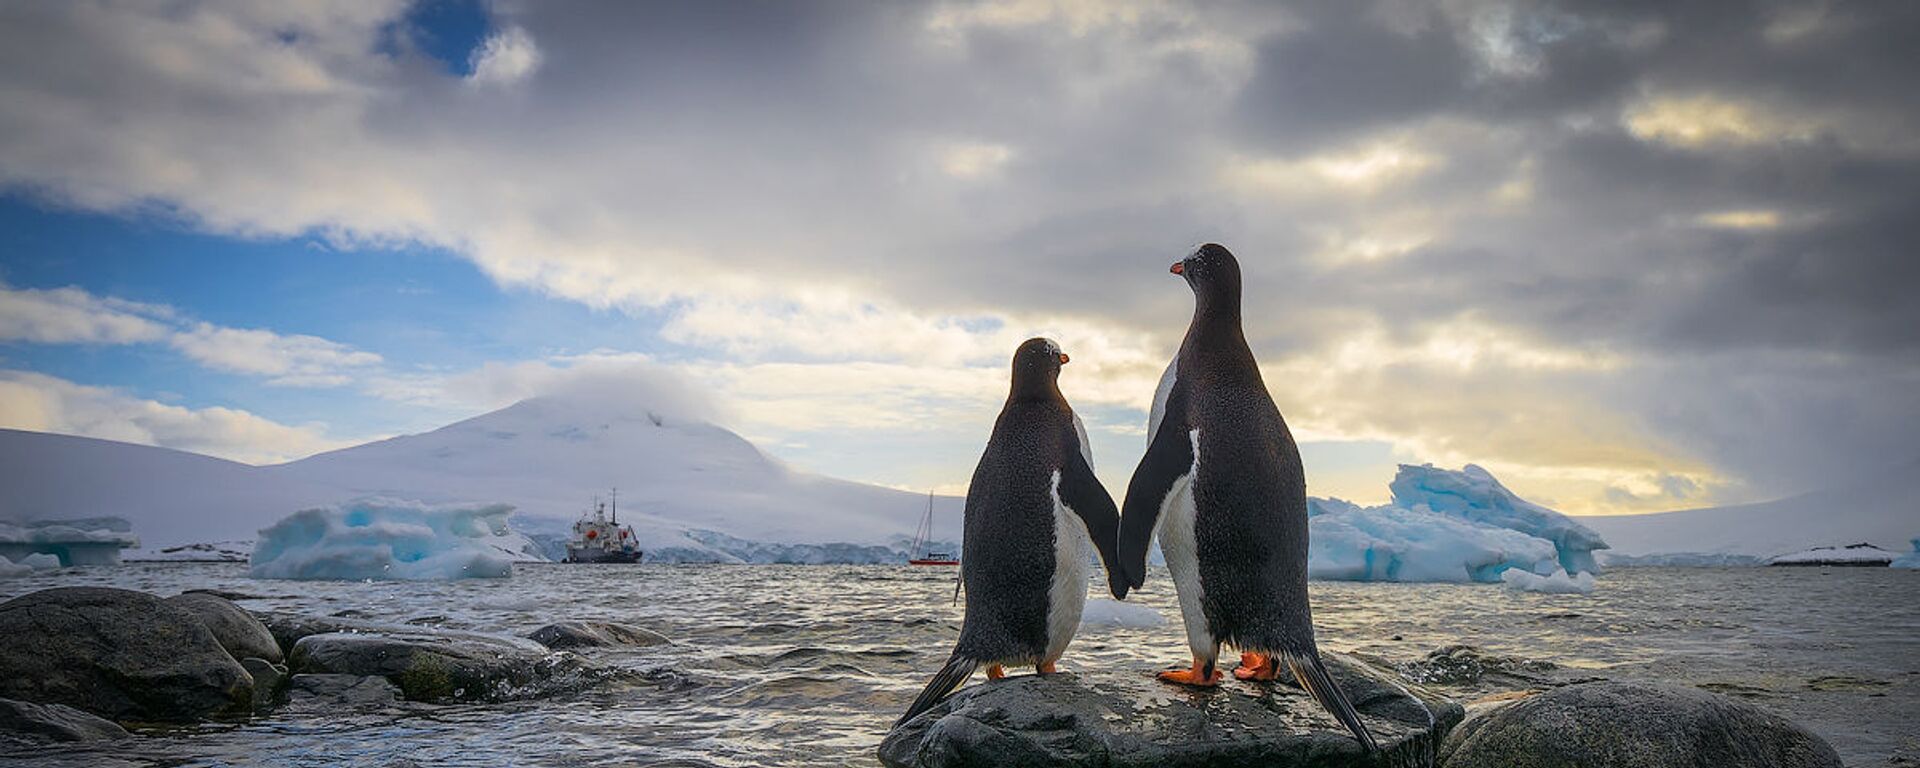 Antarktika’daki penguenler. - Sputnik Türkiye, 1920, 26.10.2018